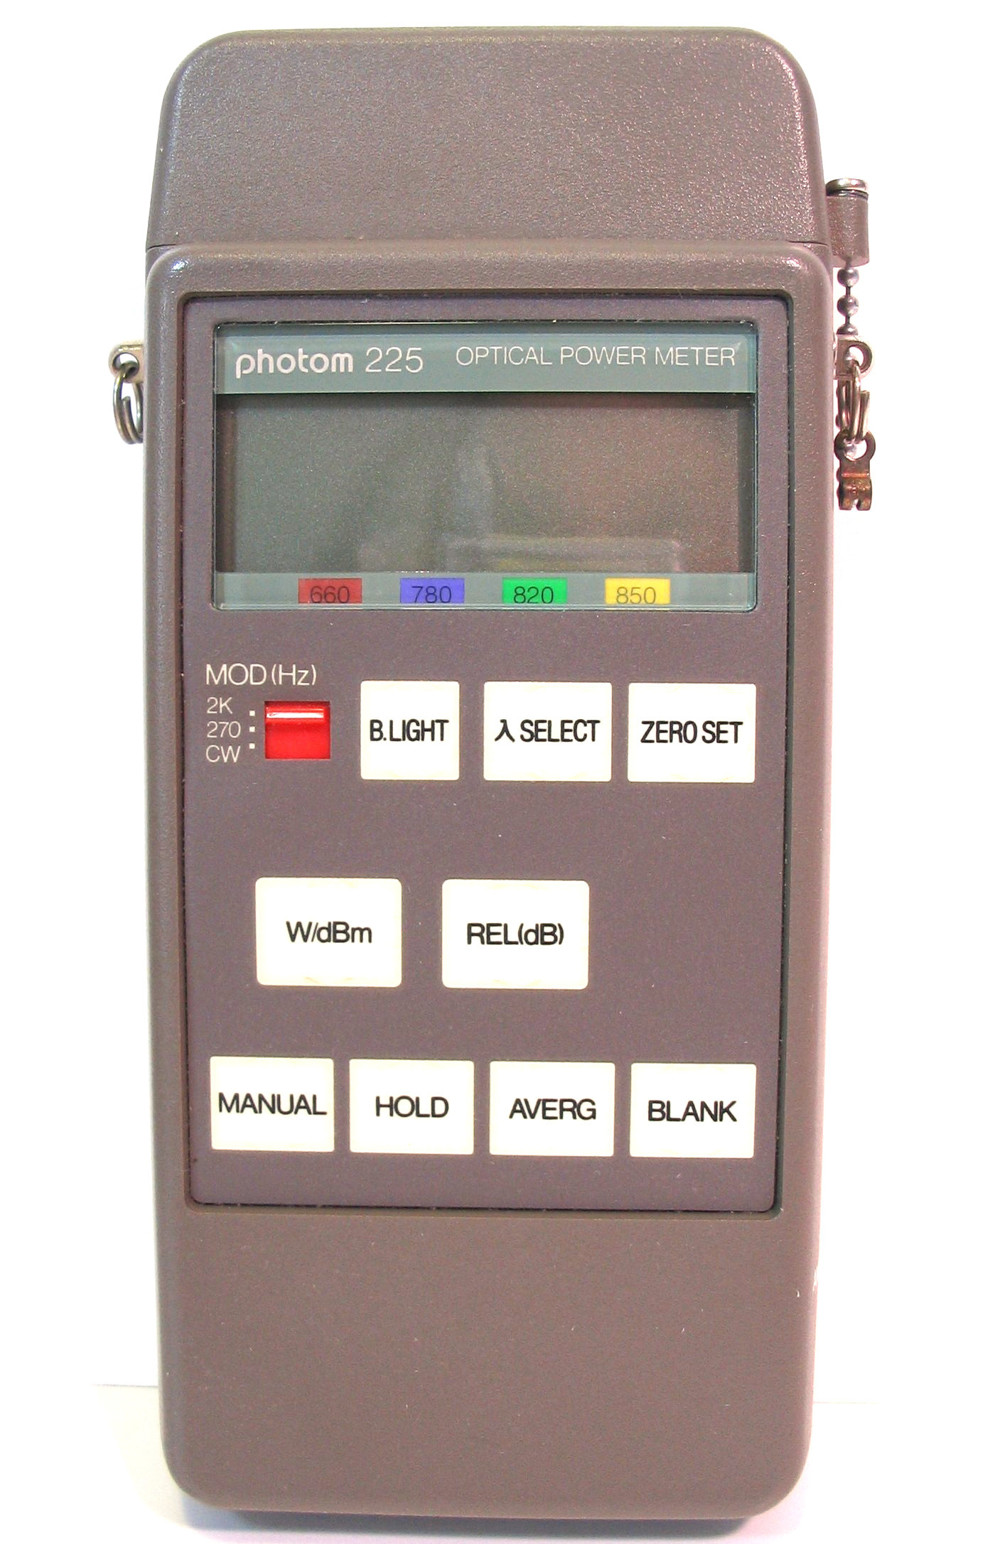 Haktronics - photom 225 - Optical Power Meter - optisches Leistungsmessgerät